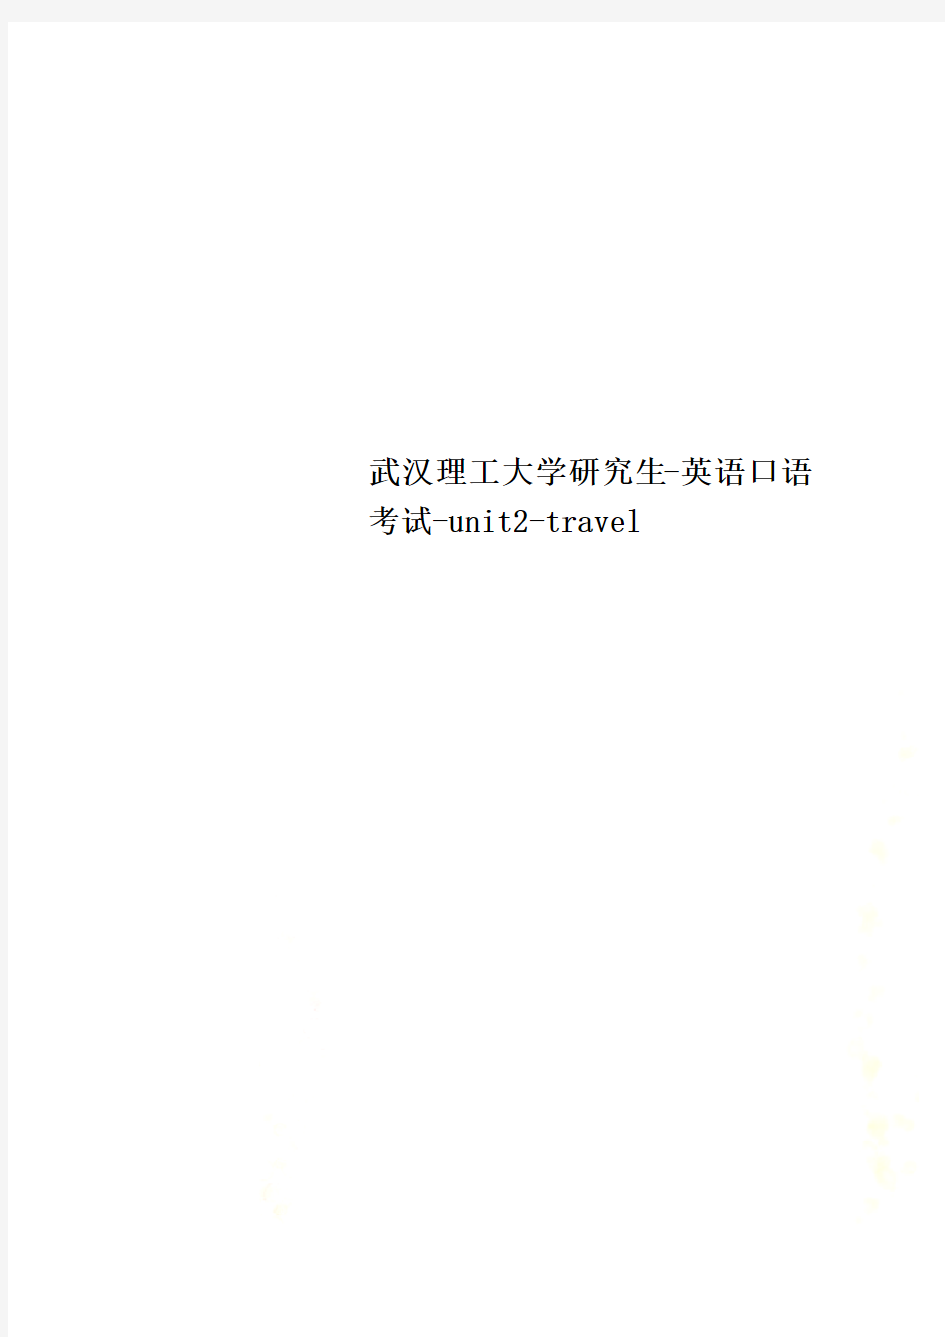 武汉理工大学研究生-英语口语考试-unit2-travel